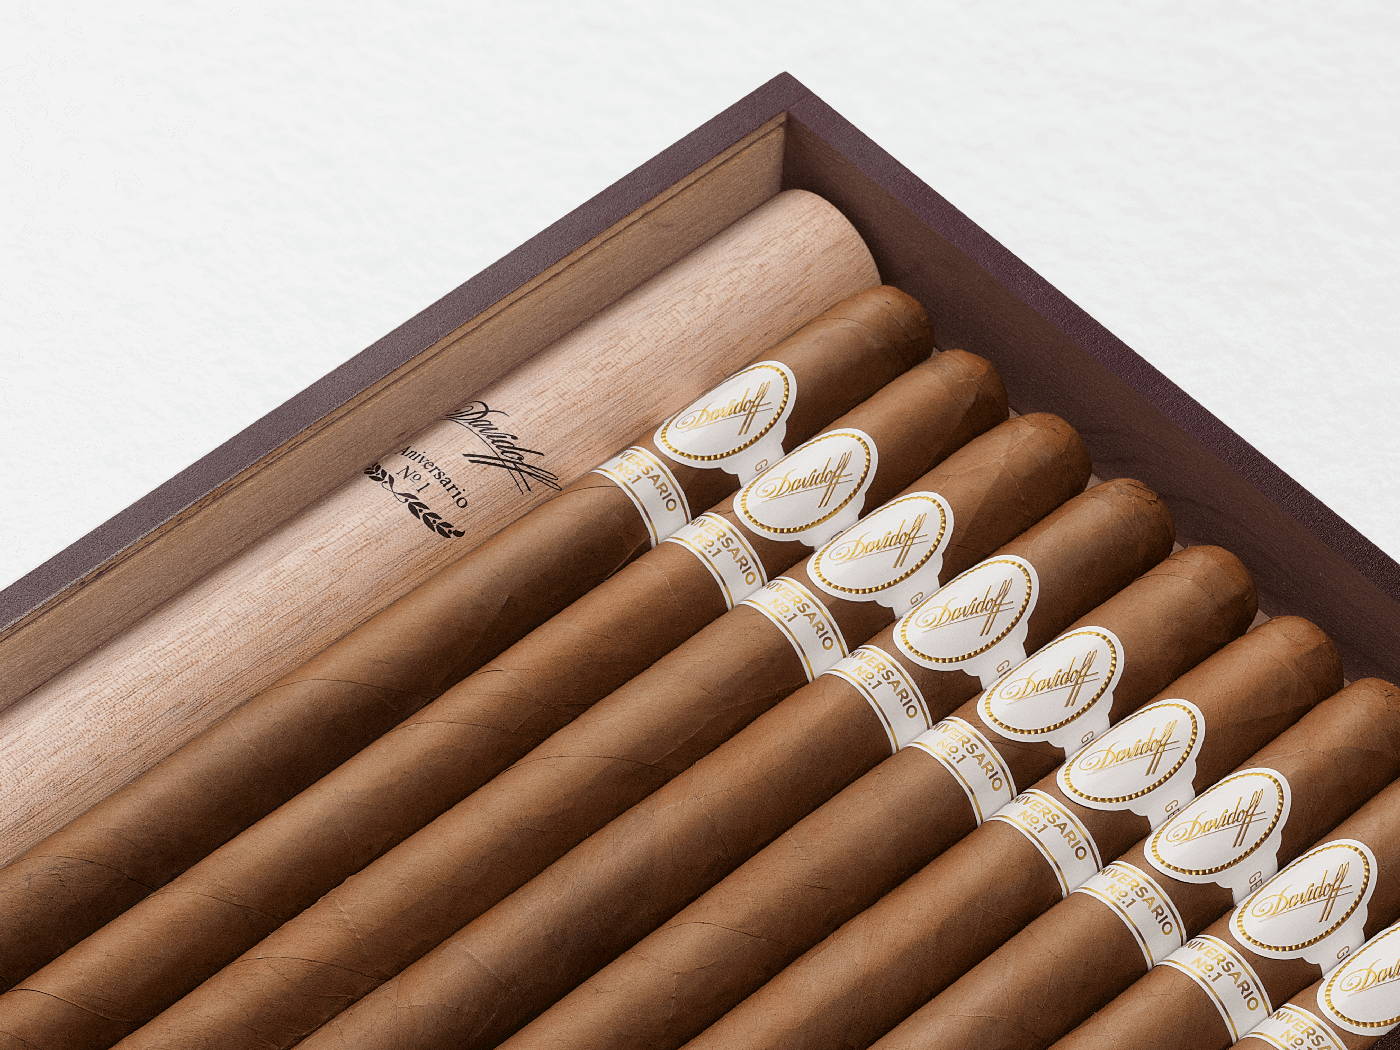 Geöffnete Kiste der Davidoff Aniversario No. 1 Limited Edition Collection mit 10 Zigarren drin. 